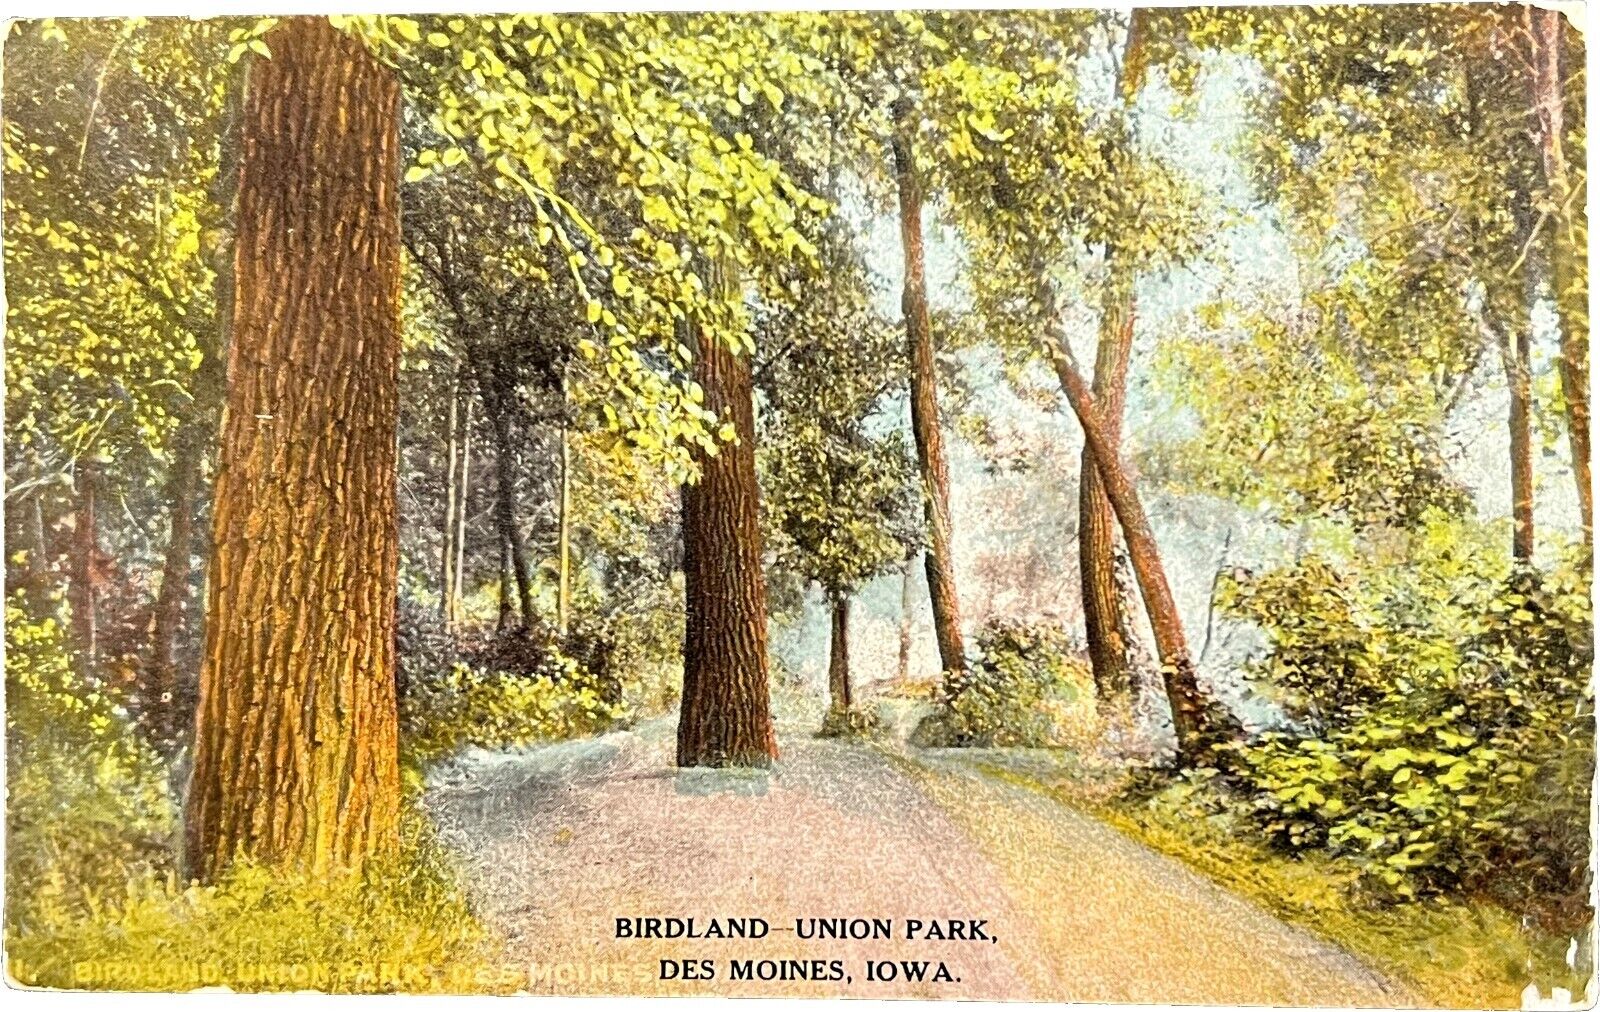 Birdland-Union Park, Des Moines, Iowa, vintage postcard 1909